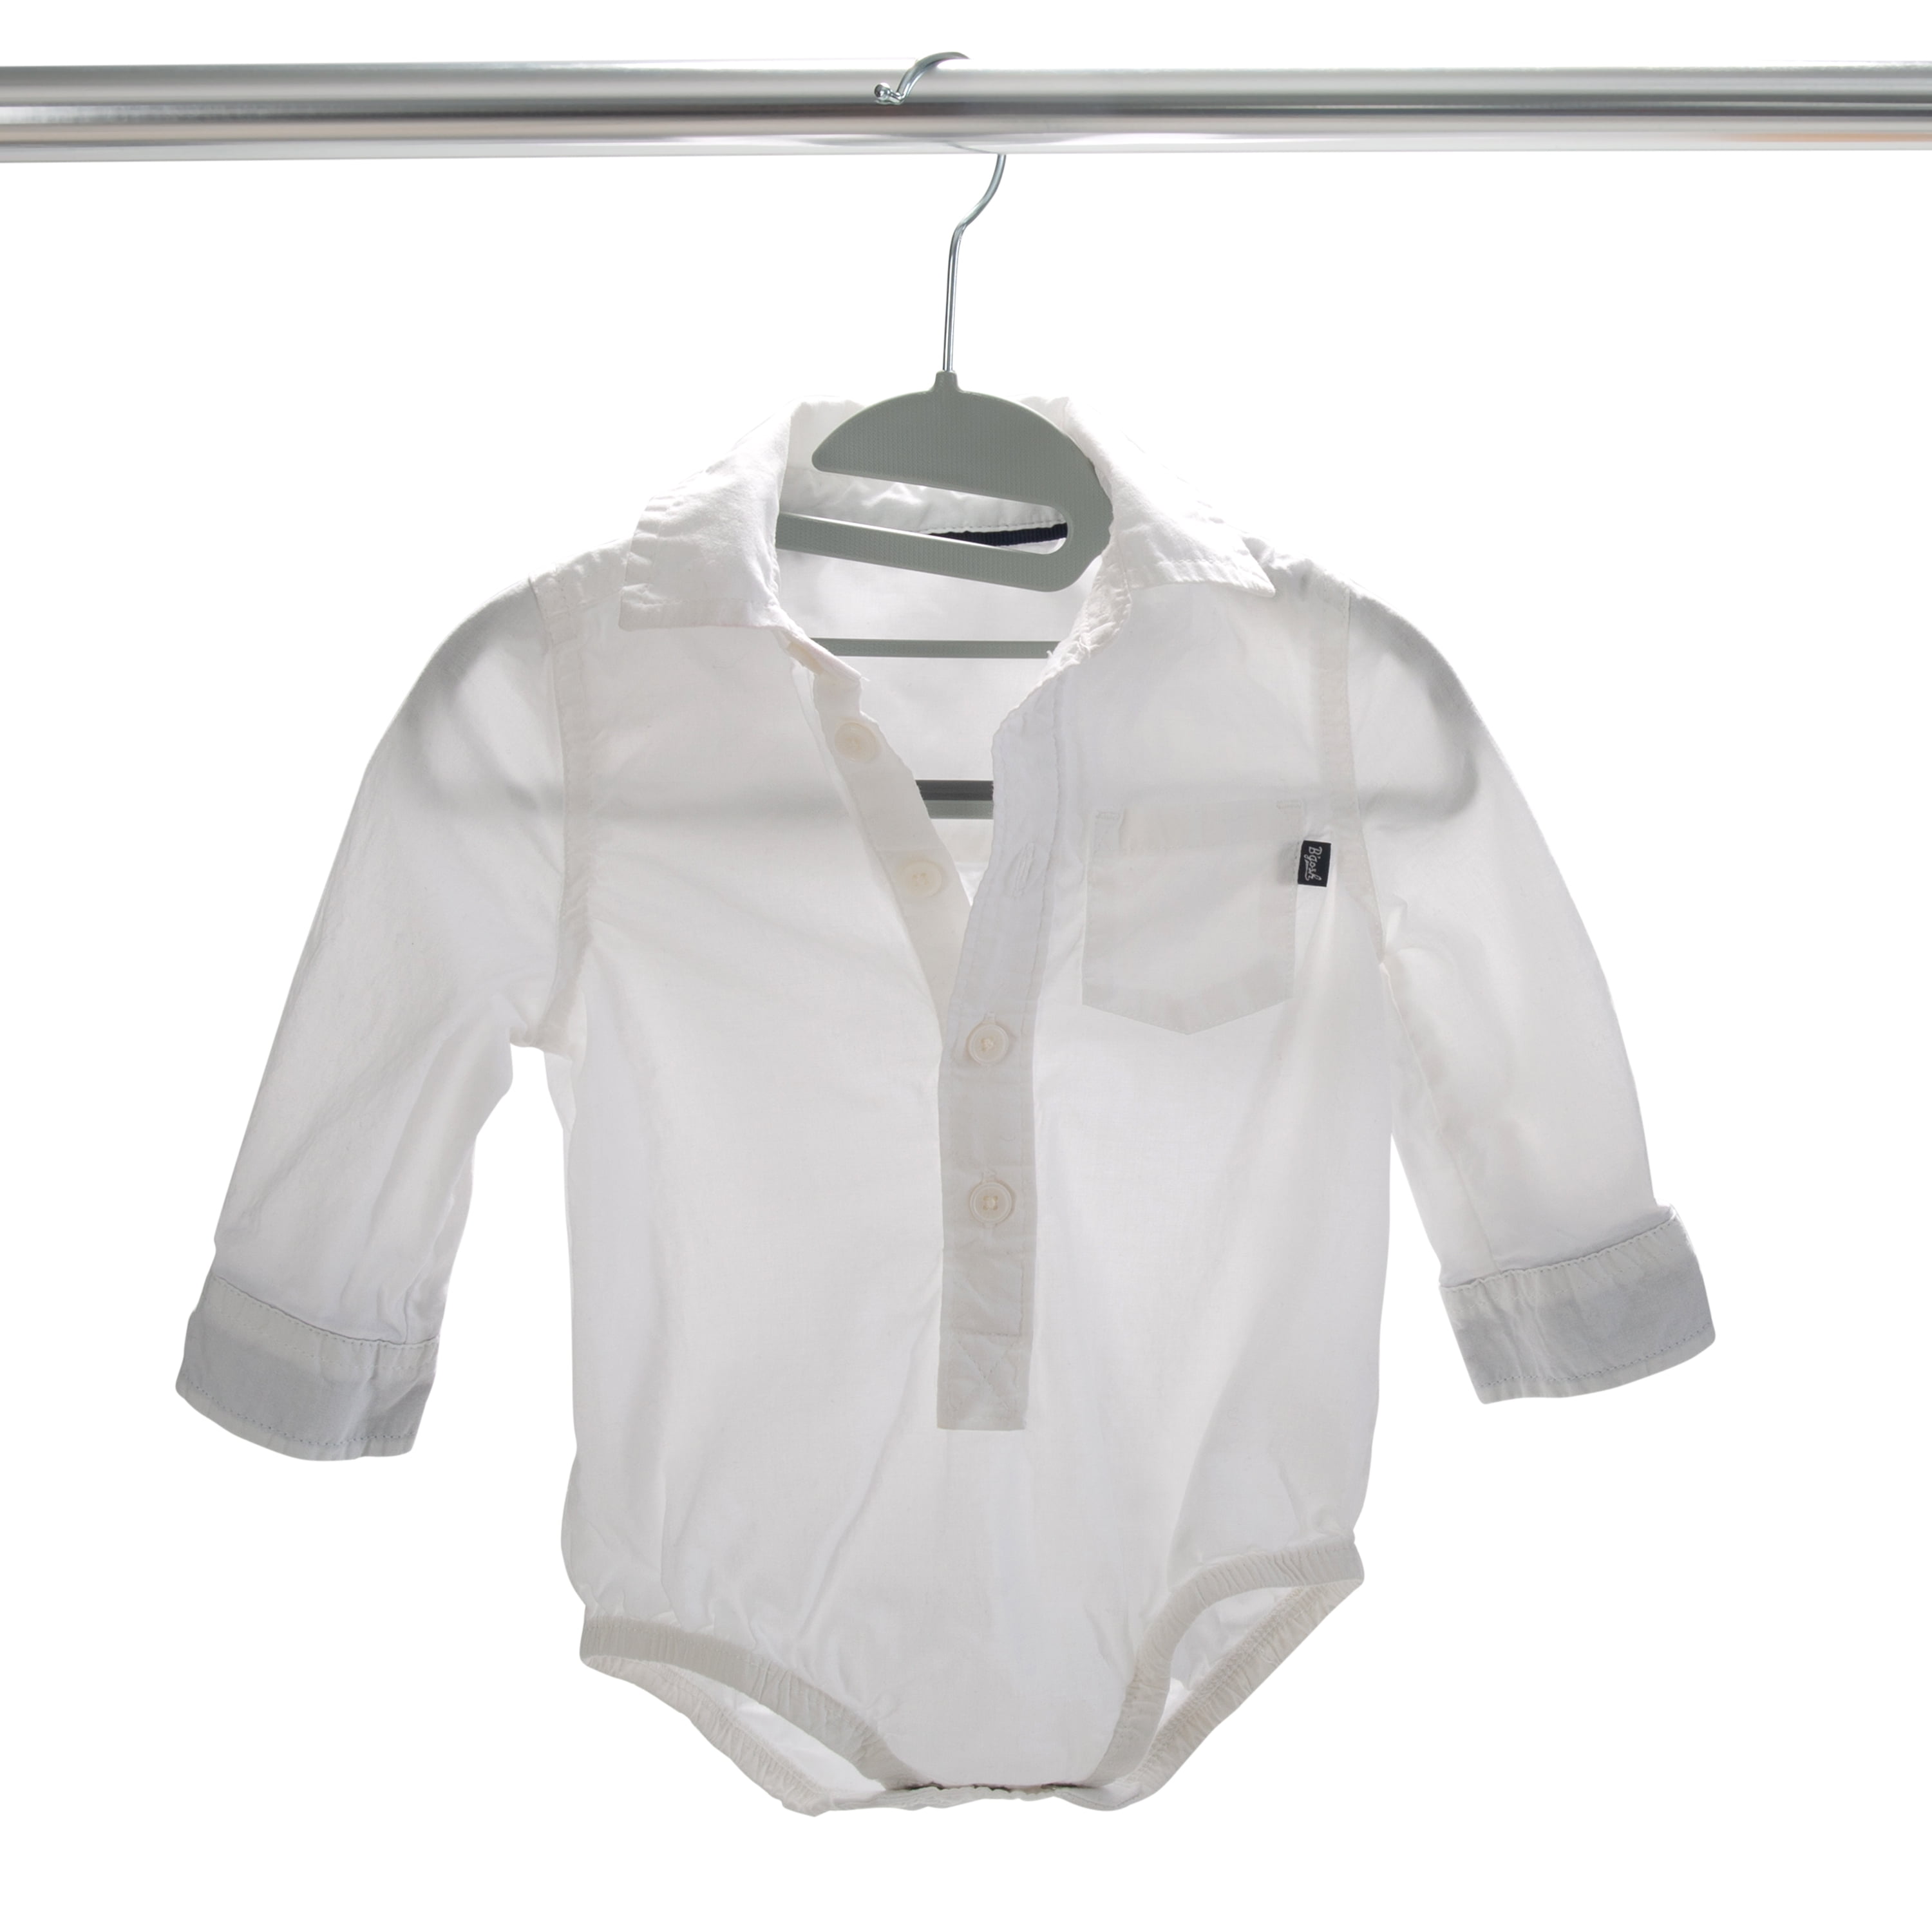 Bagail Children's Clothes Hangers Kids Non-Slip Hangers Baby Hangers I